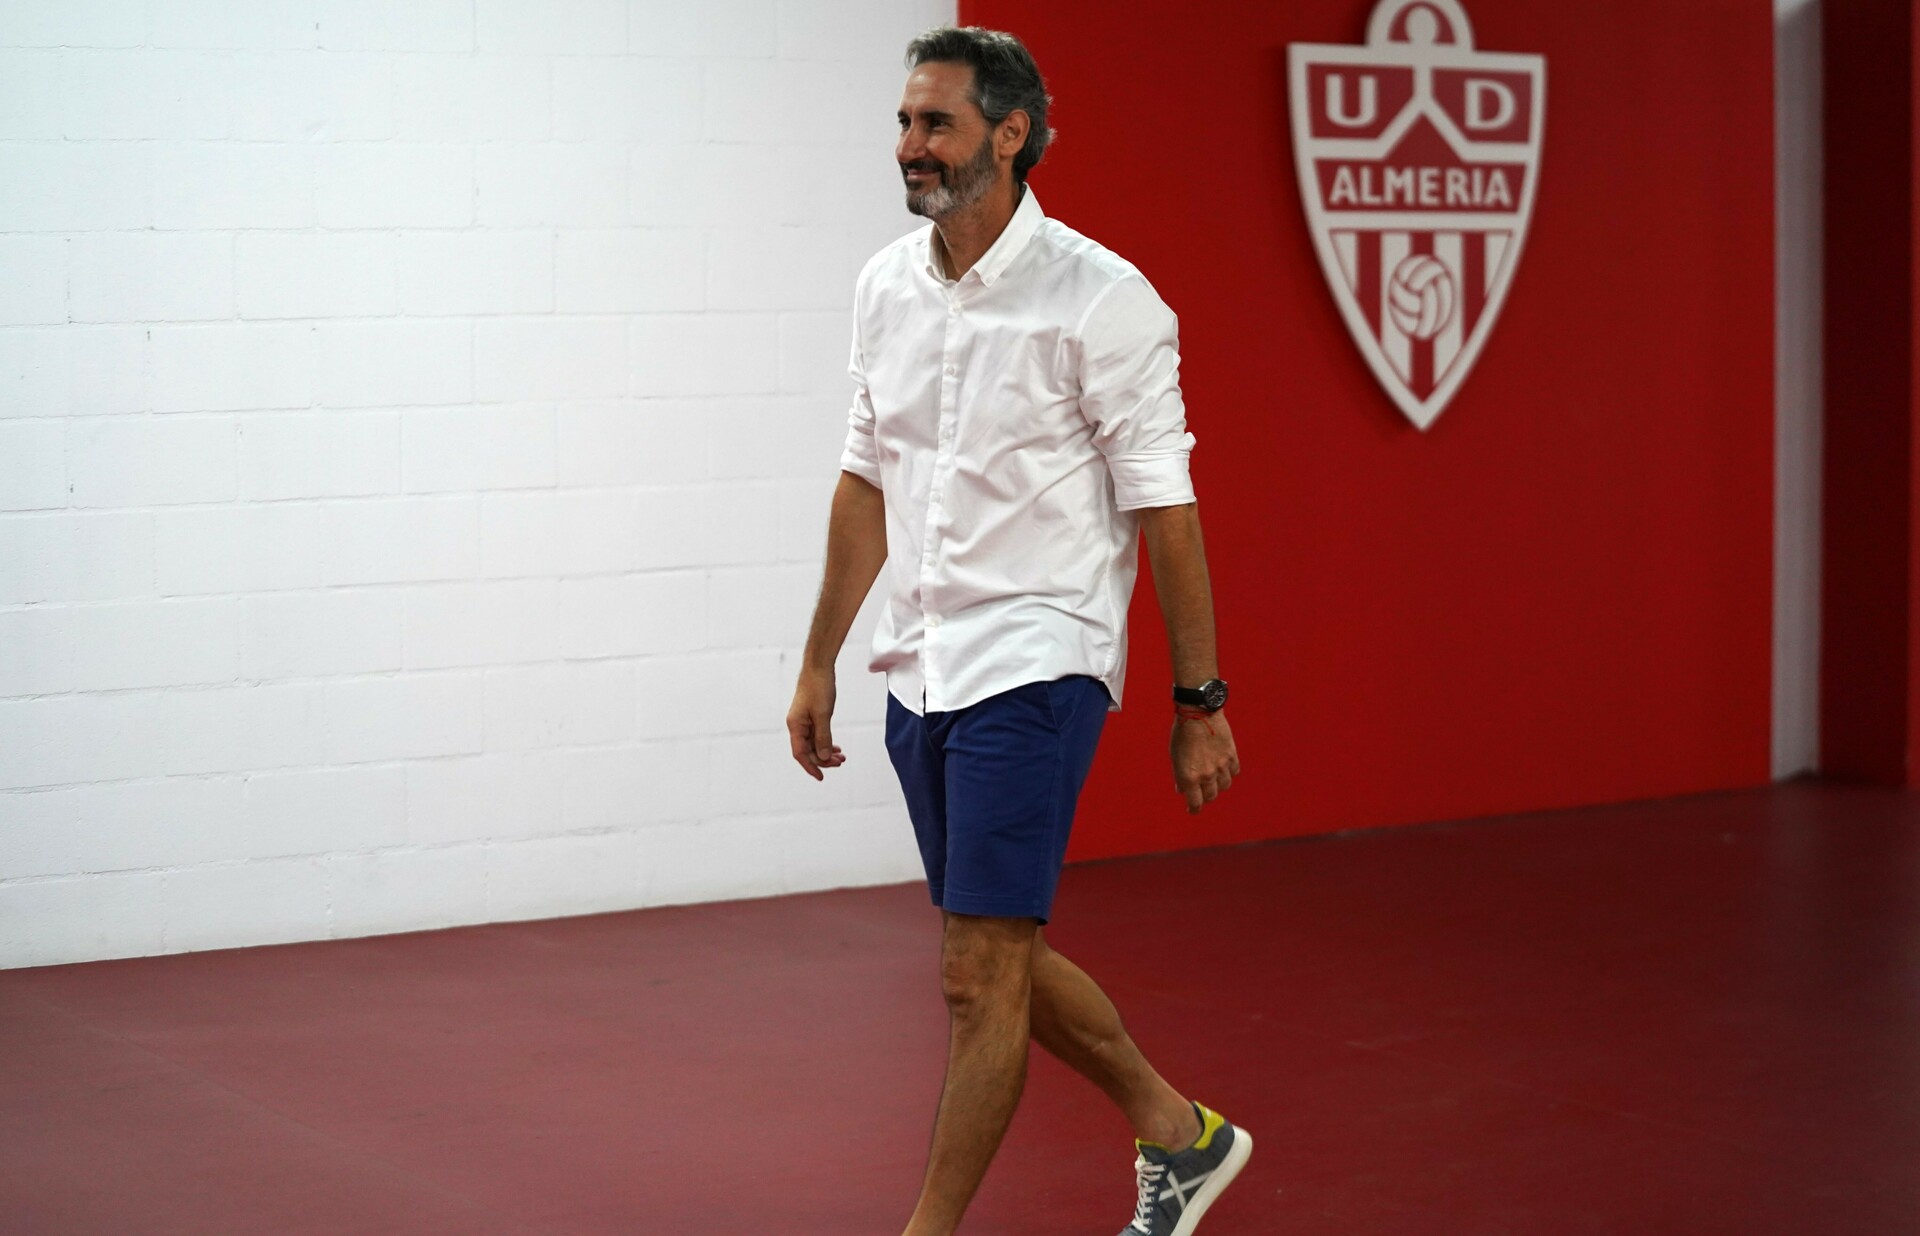 Vicente Moreno will no longer be UD Almería head coach